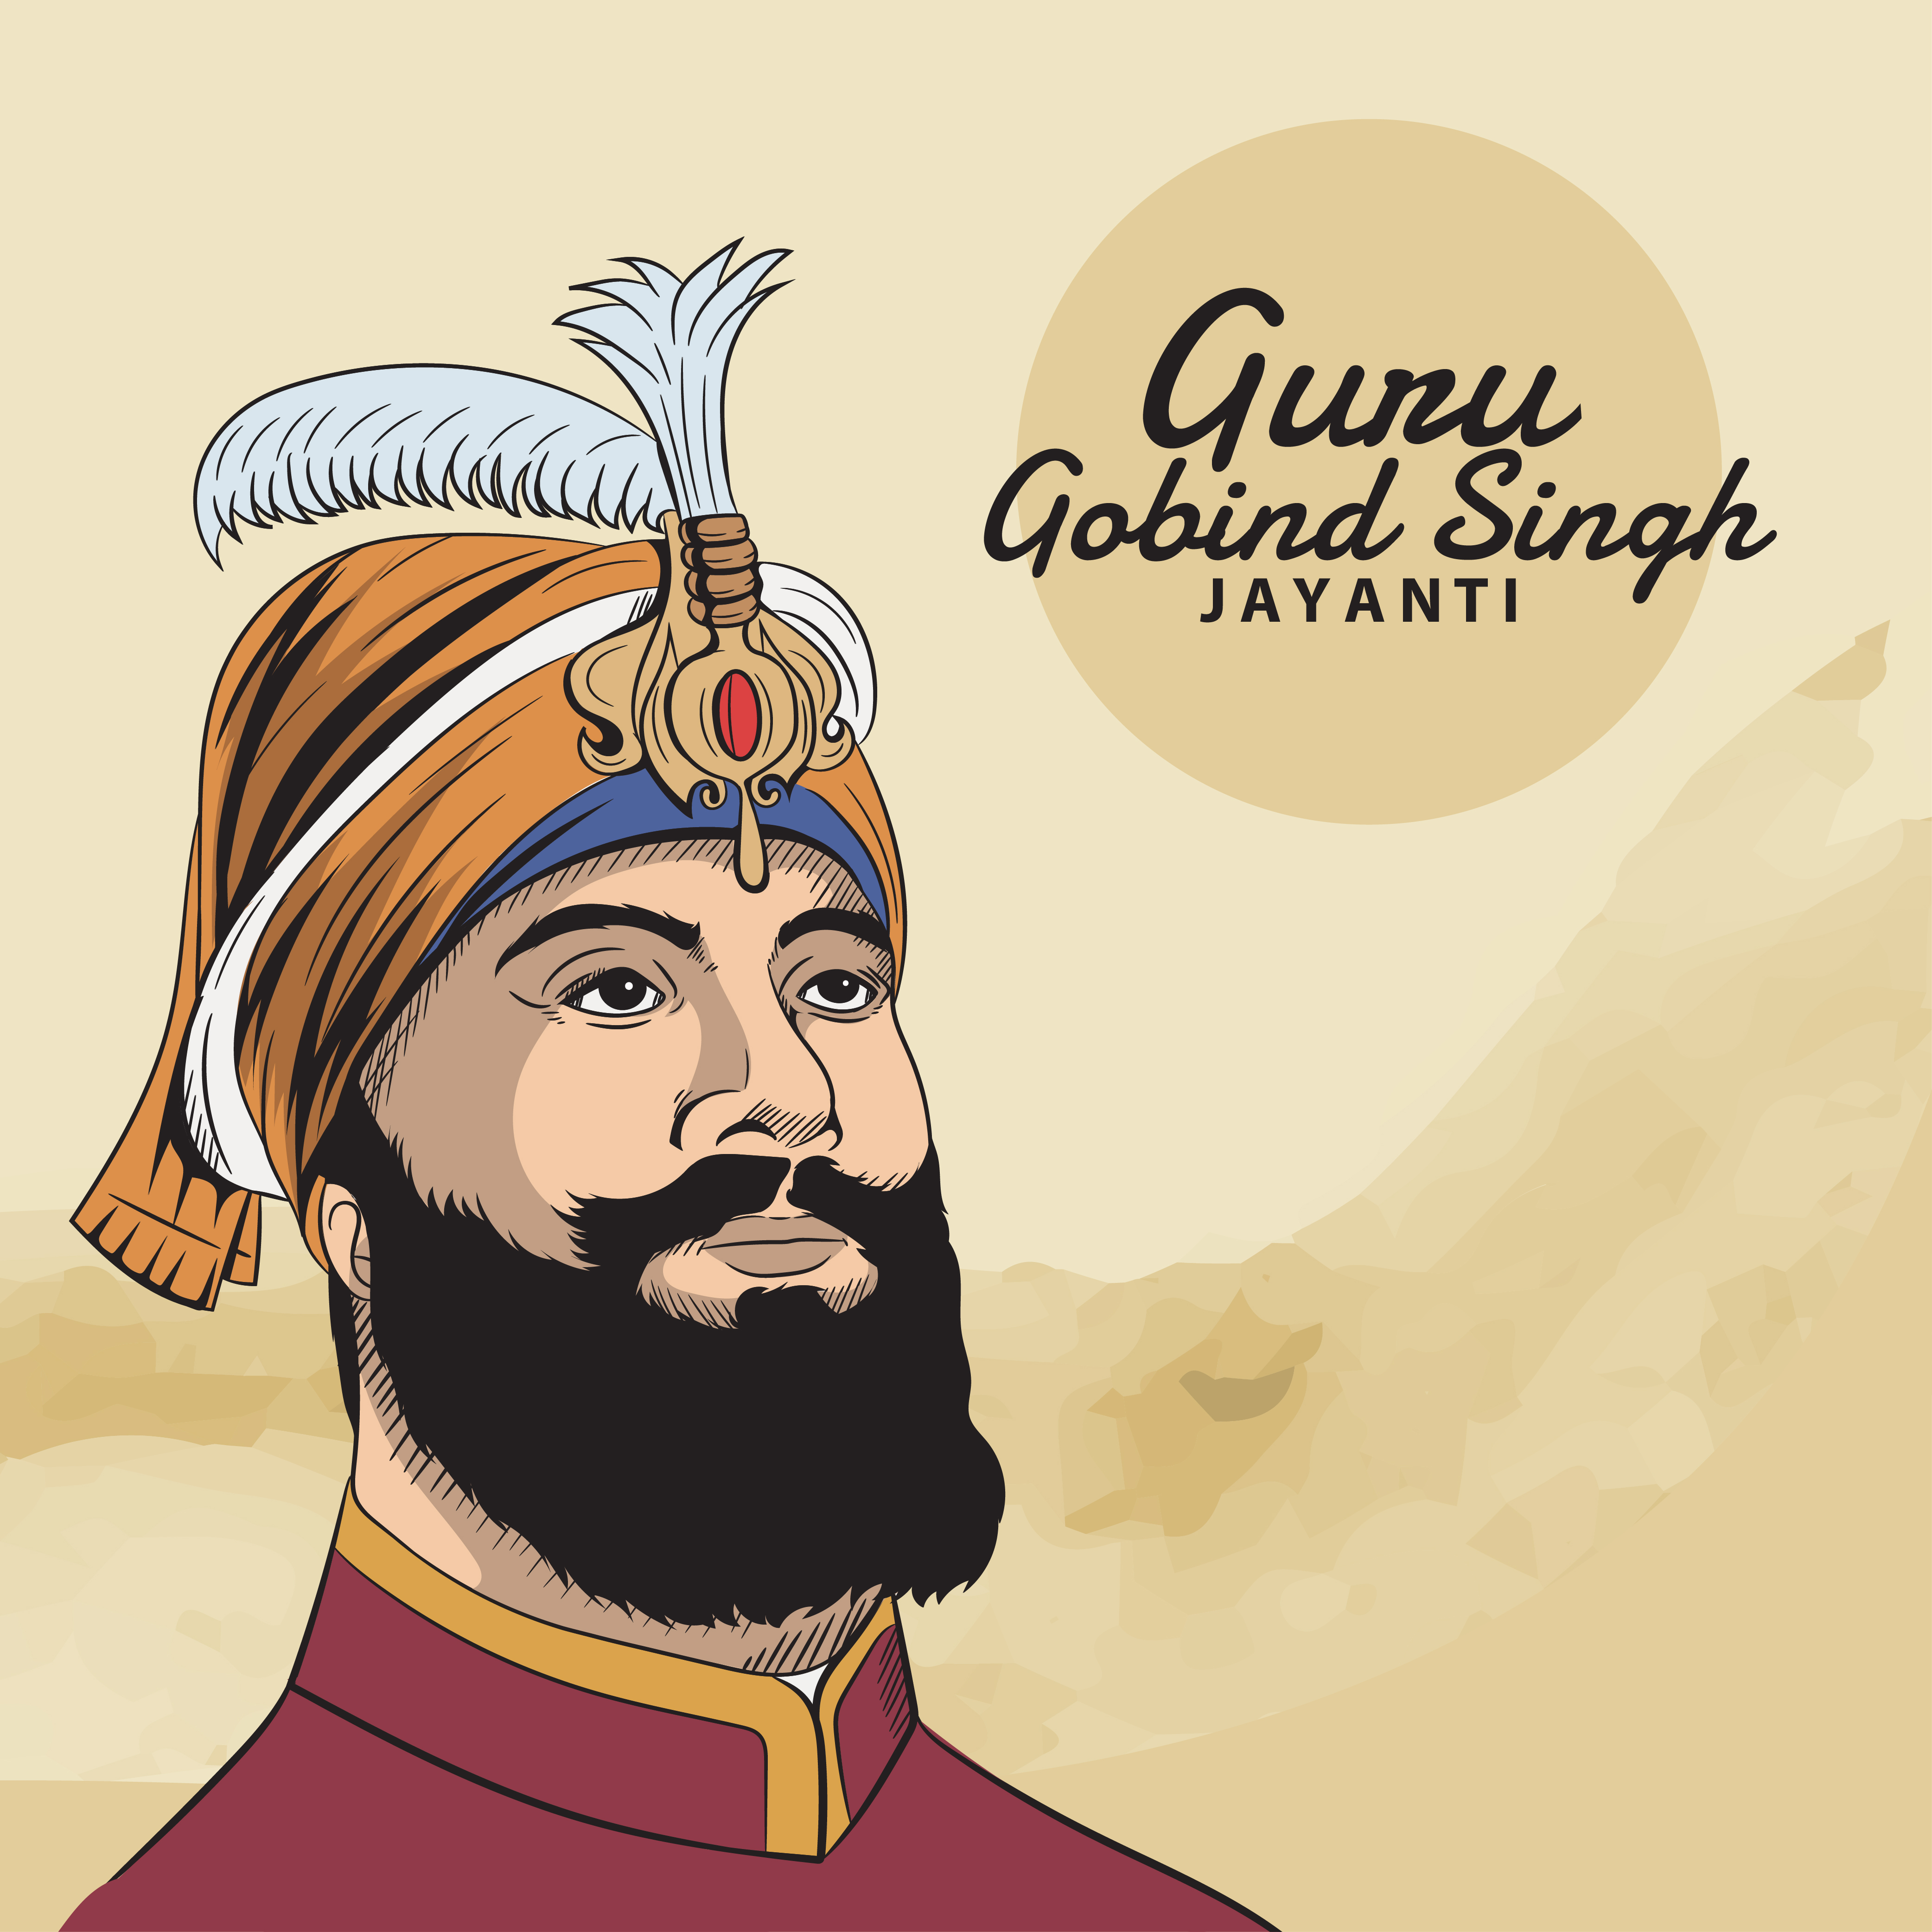 Guru Gobind Singh Jayanti 2022: عروض الأسعار ، التمنيات ، الرسائل ، الصور ، التحيات ، التعليقات التوضيحية و Shayari